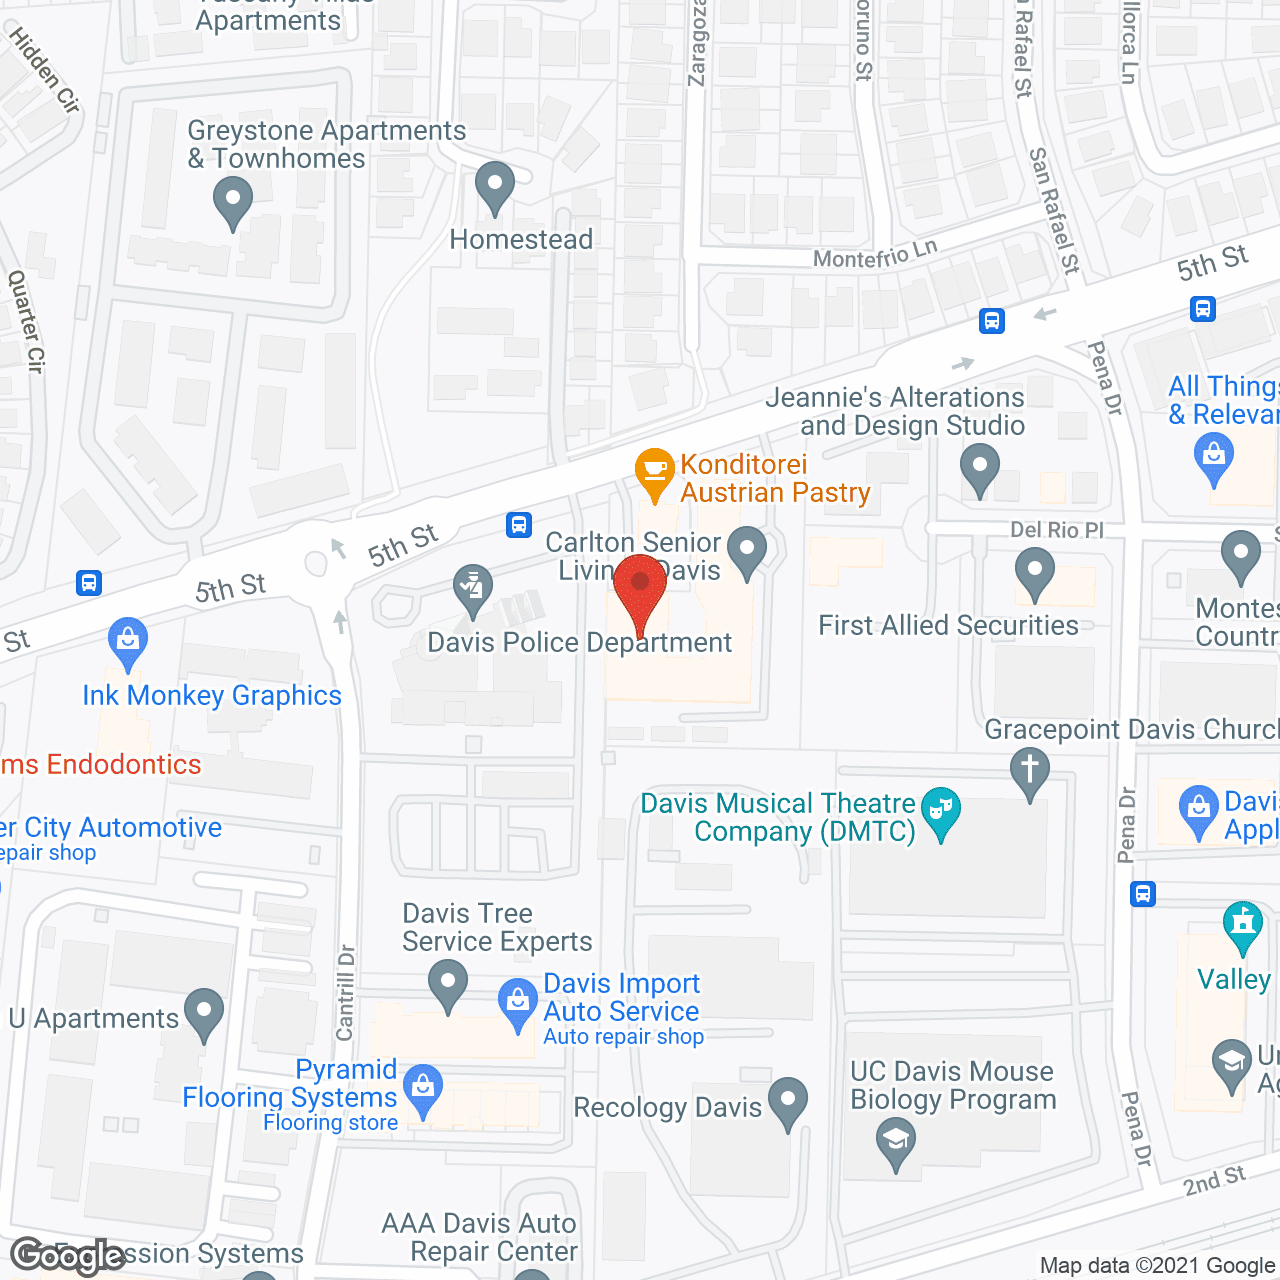 Carlton Plaza Of Davis in google map